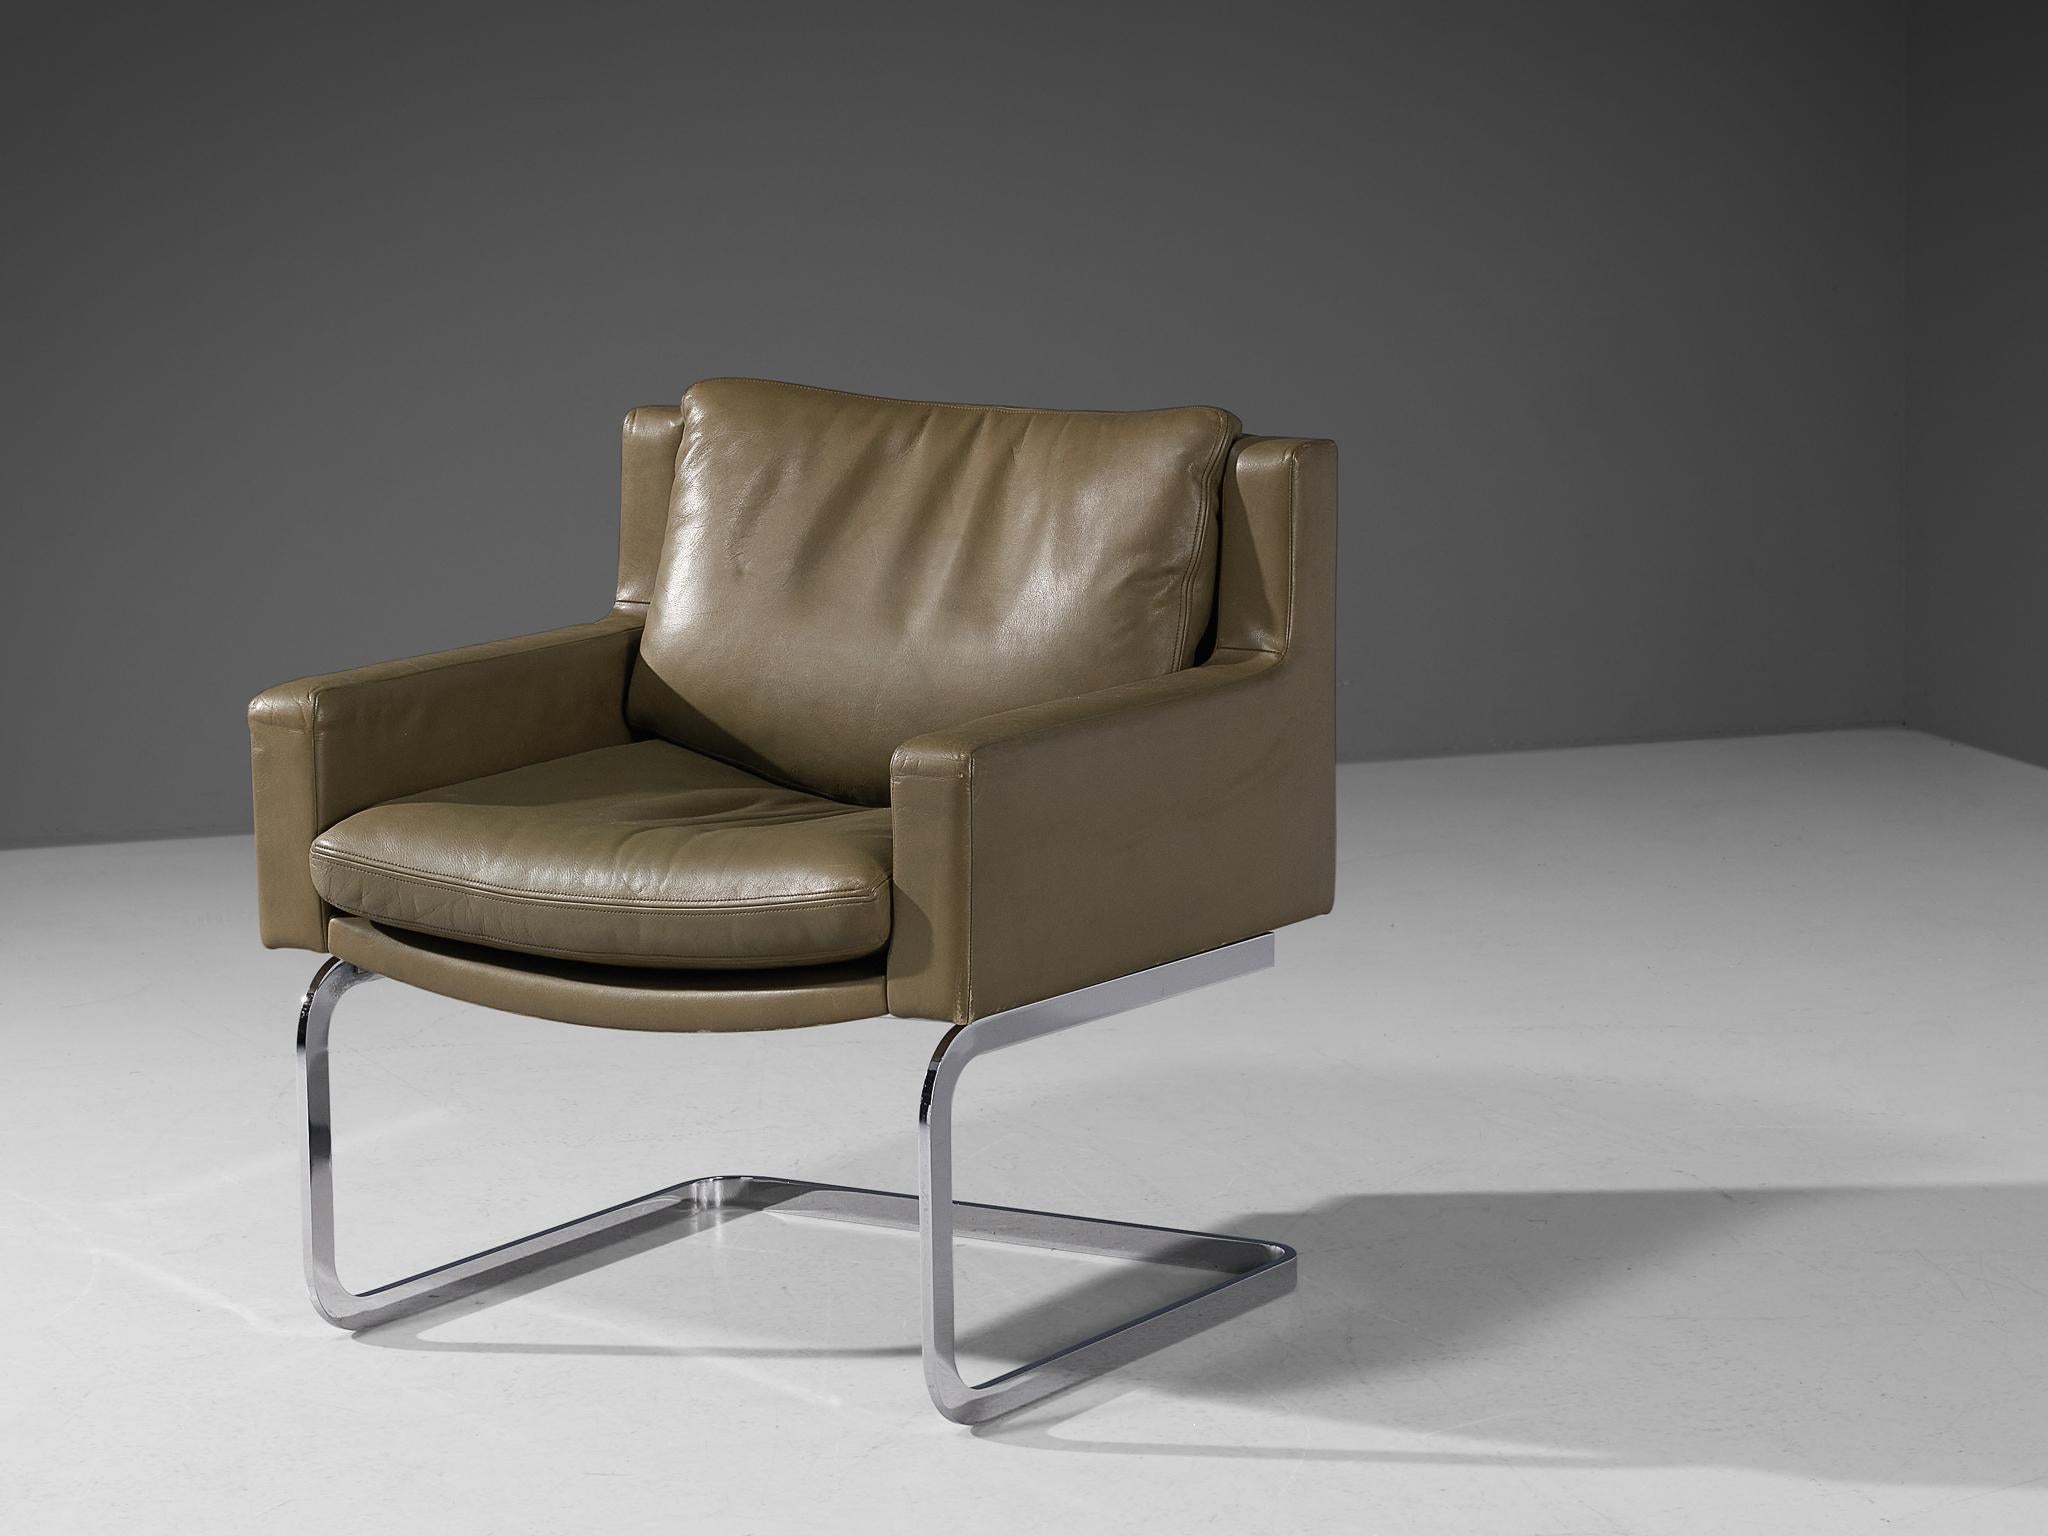 Robert Haussmann pour De Sede, fauteuil modèle 'DS-201', métal chromé, cuir, Suisse, conçu en 1957 

Une conception de Robert Haussmann qui se caractérise par une structure de forme cubique. Le dossier s'insère dans les accoudoirs par une transition